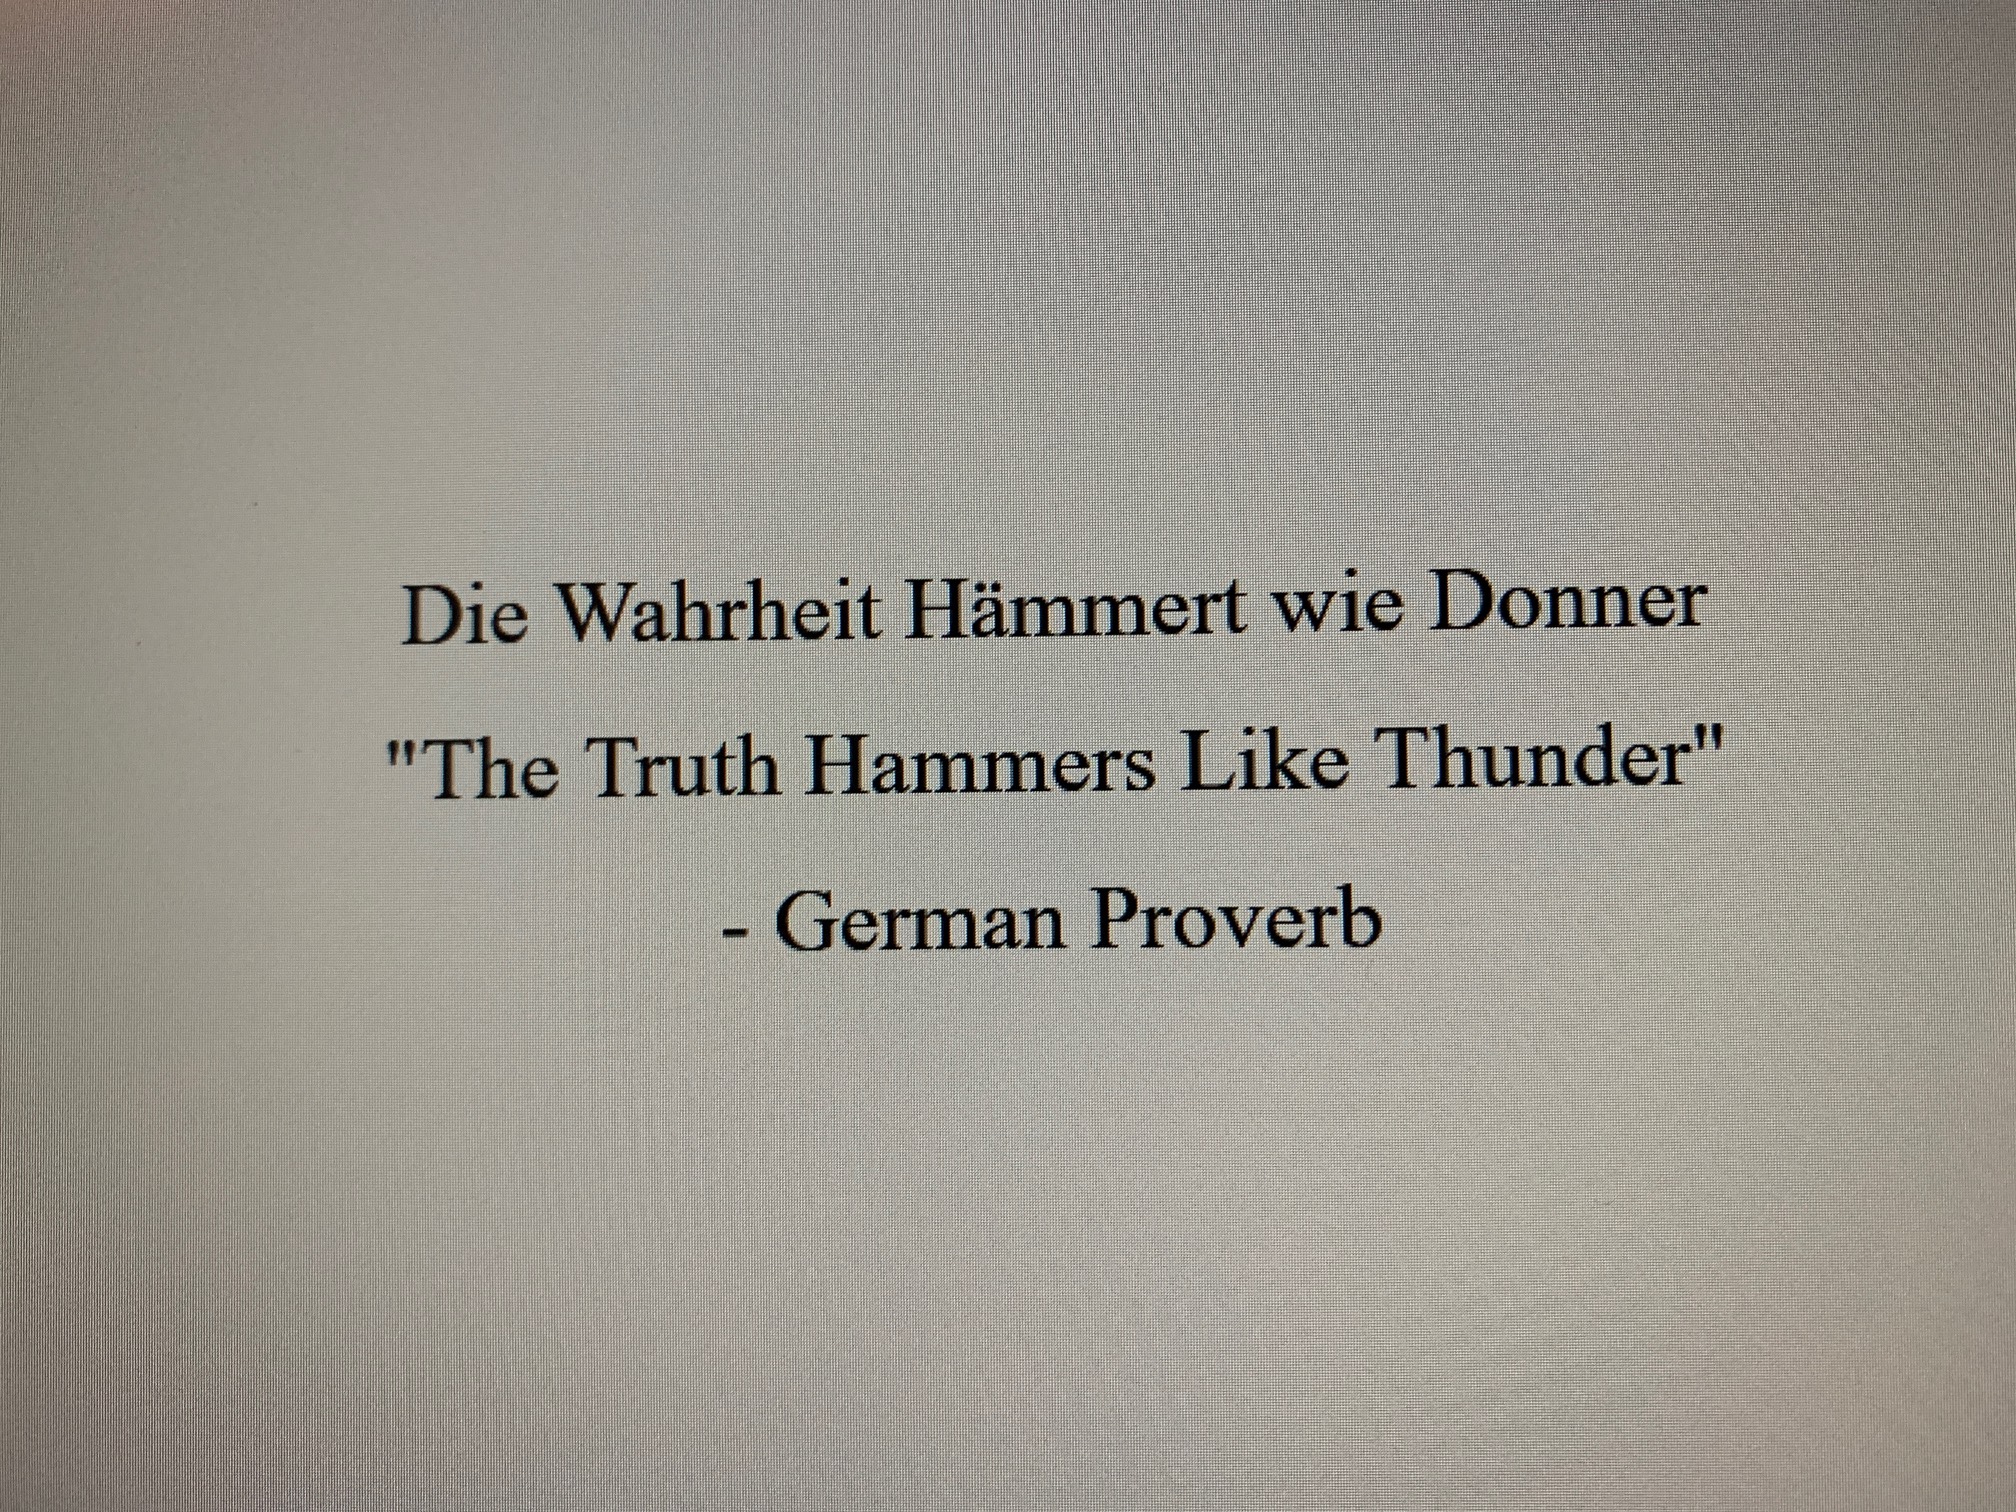 German Proverb